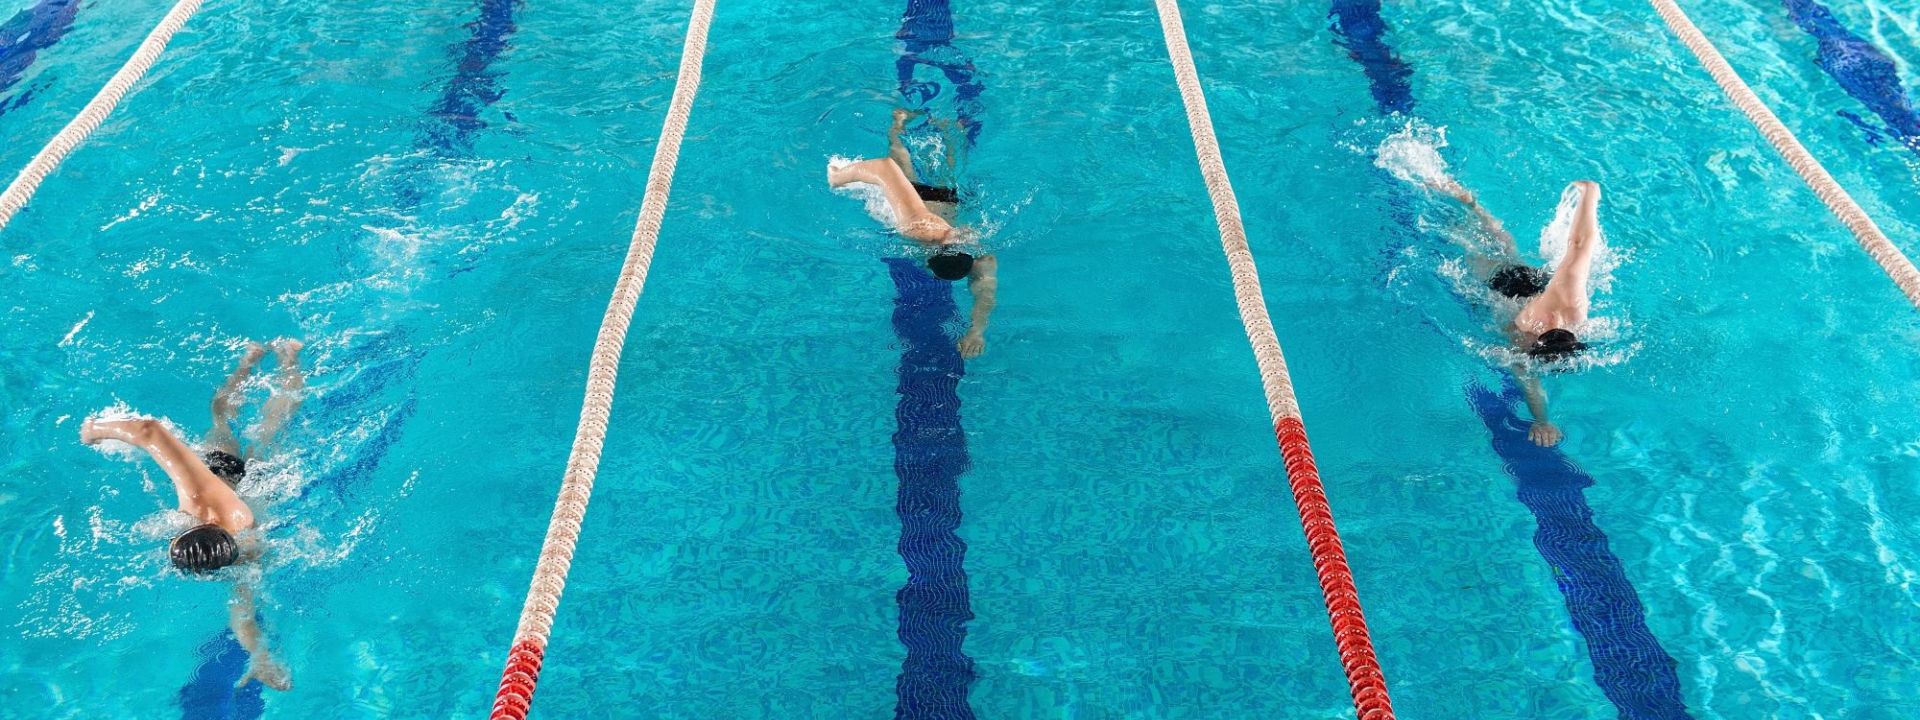 Úszás
sportedző / sportoktató